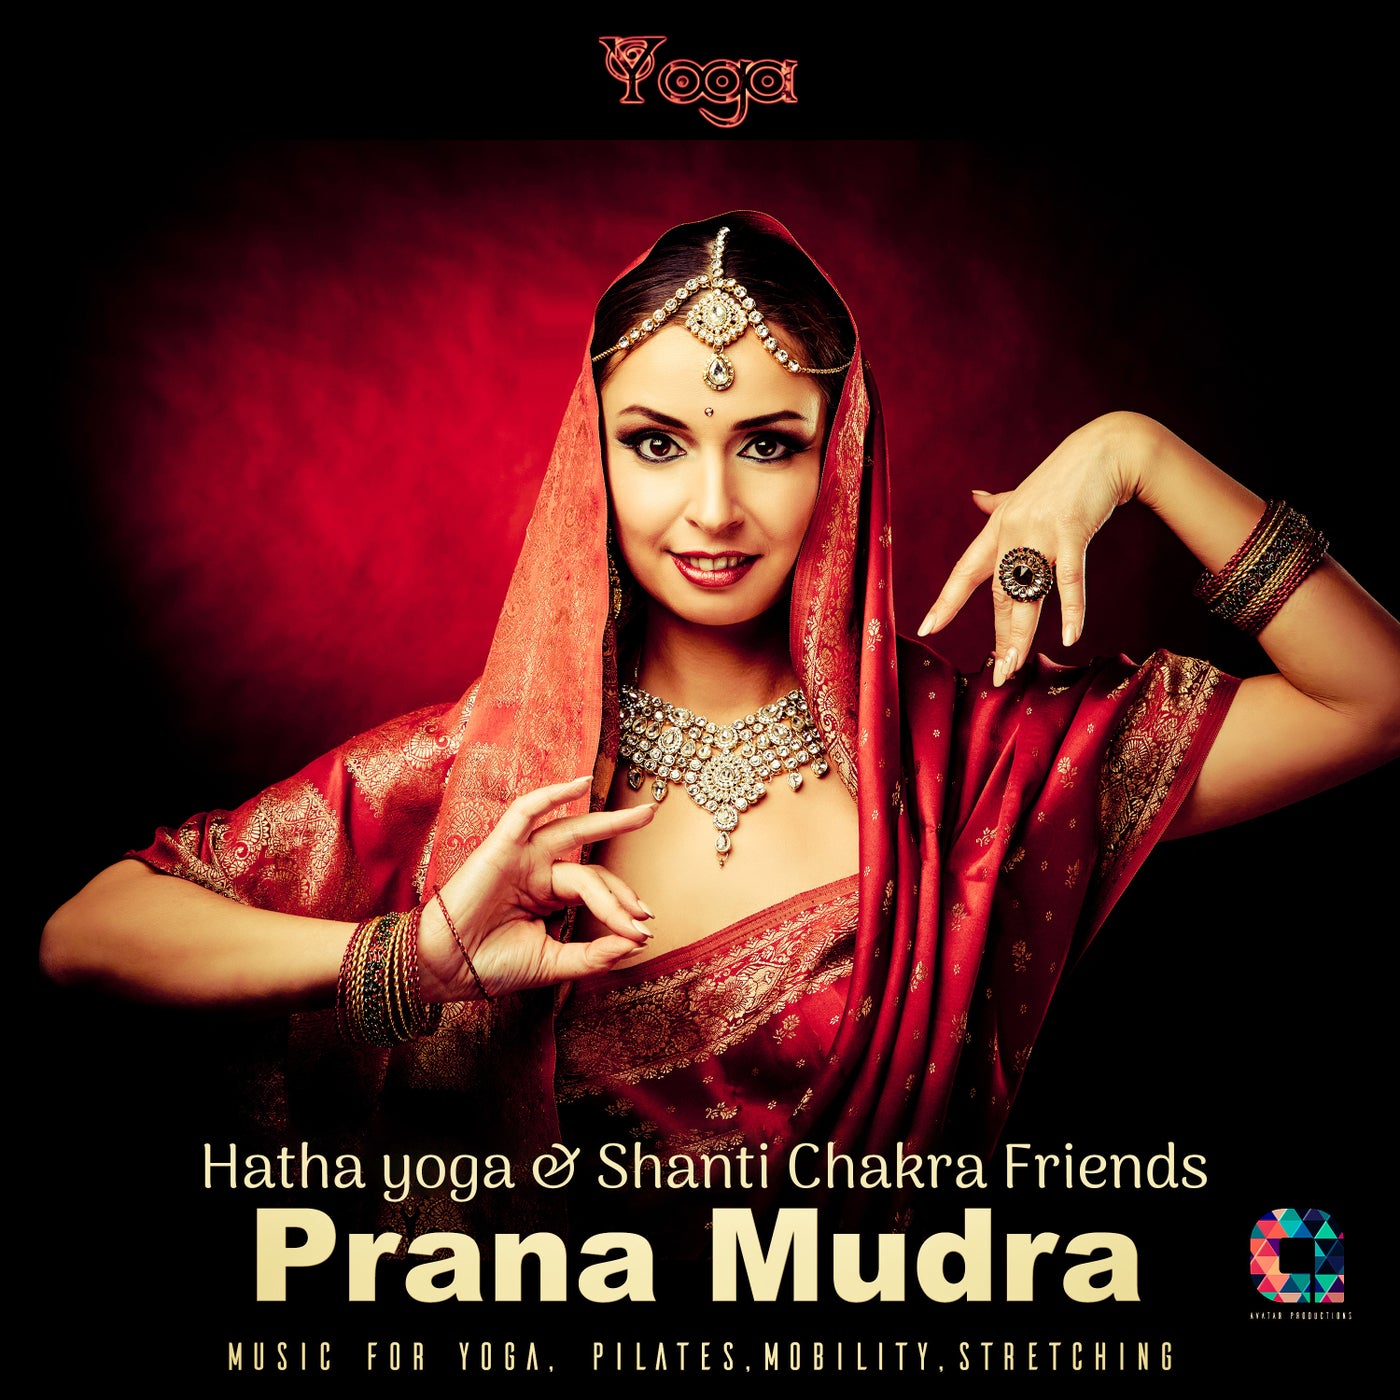 Prana Mudra (Music for Yoga, Pilates, Mobility & Stretching)